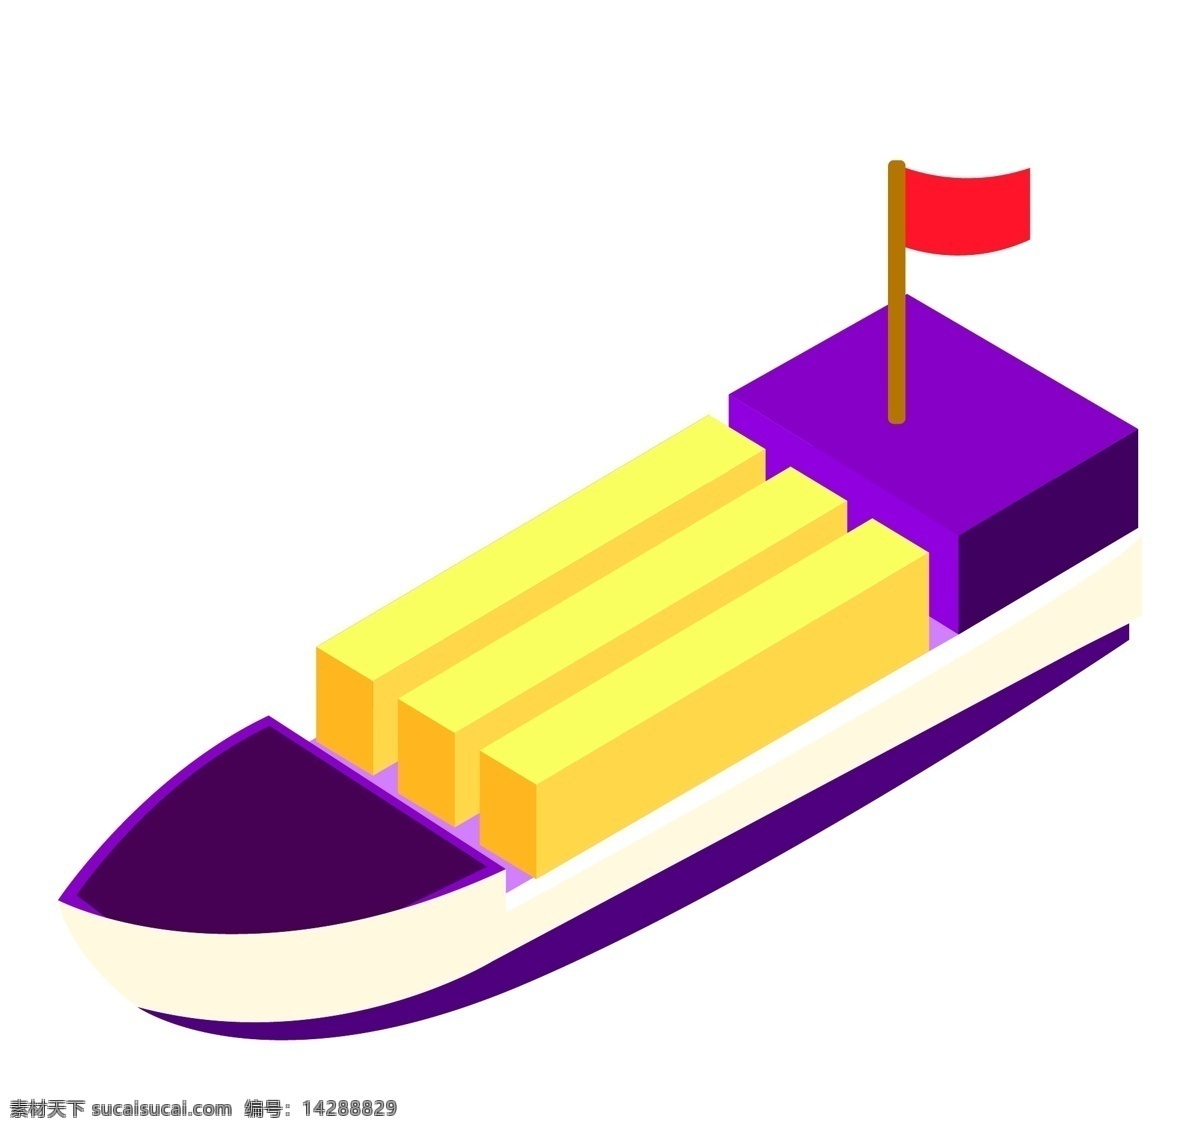 紫色 轮船 装饰 插画 紫色的轮船 海上轮船 红色的旗帜 漂亮的轮船 轮船装饰 轮船插画 交通工具轮船